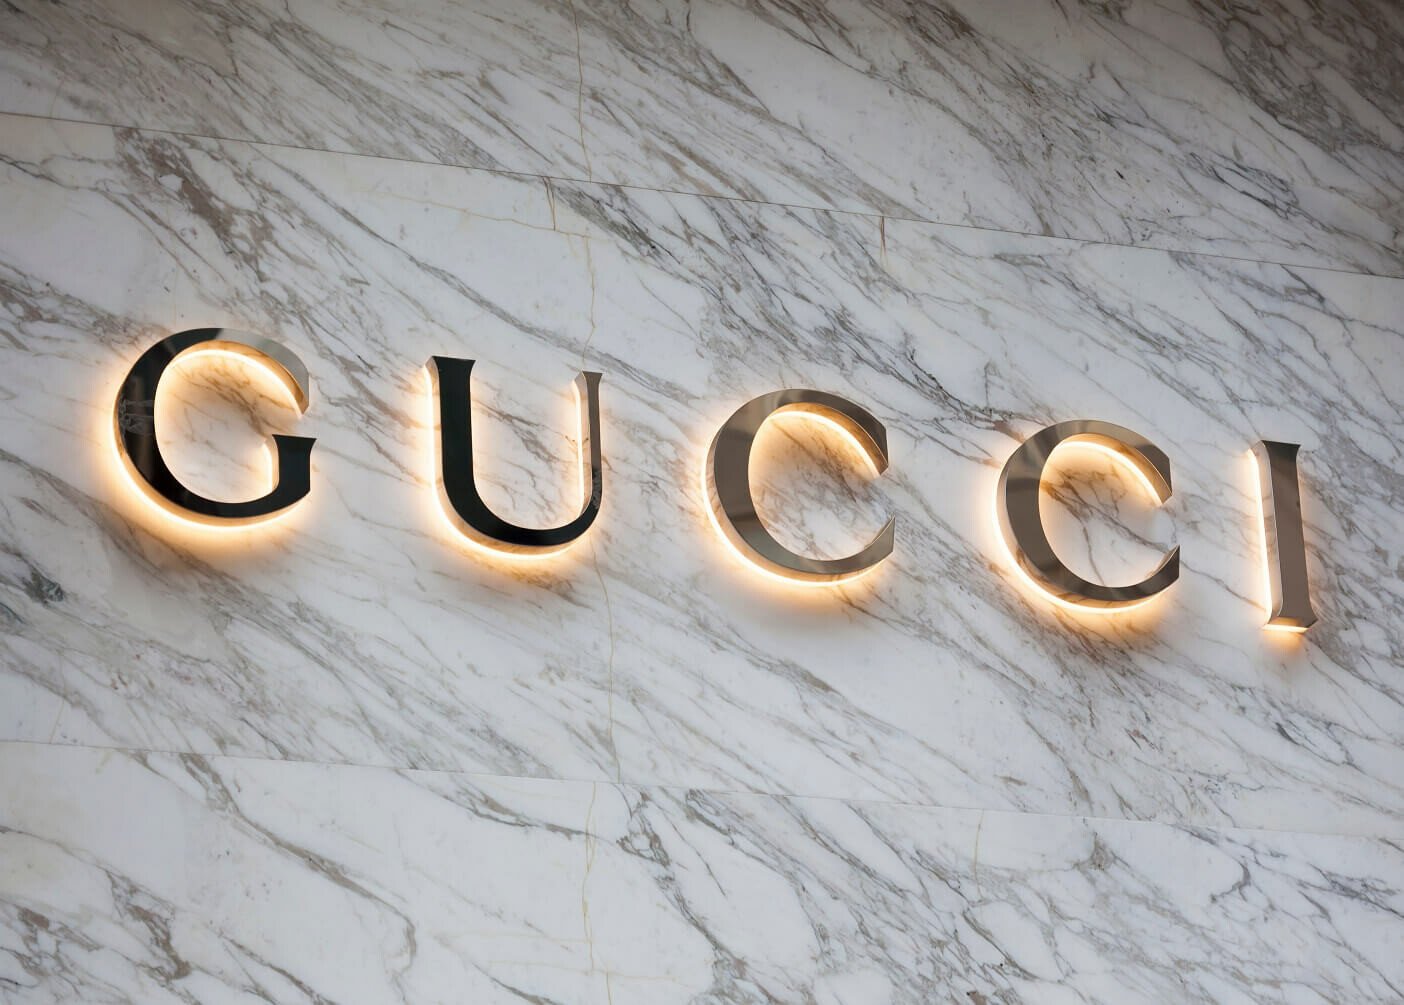 Luxury Brand Gucci Collaborate...